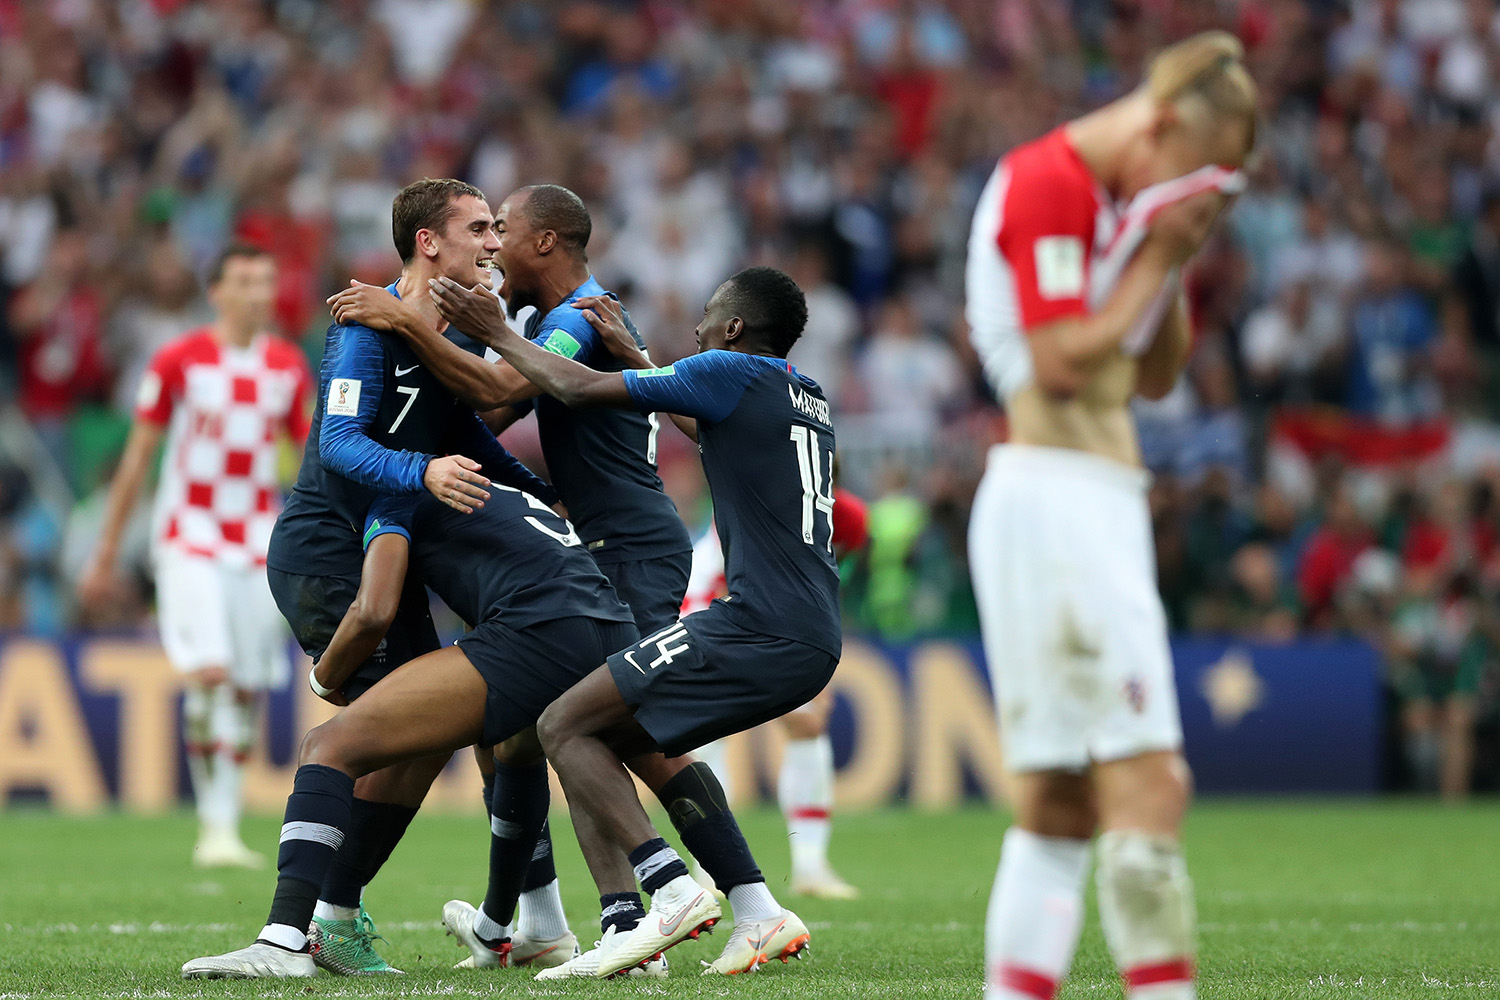 França x Croácia na final. Nike é campeã da Copa do Mundo 2018 » Mantos do  Futebol